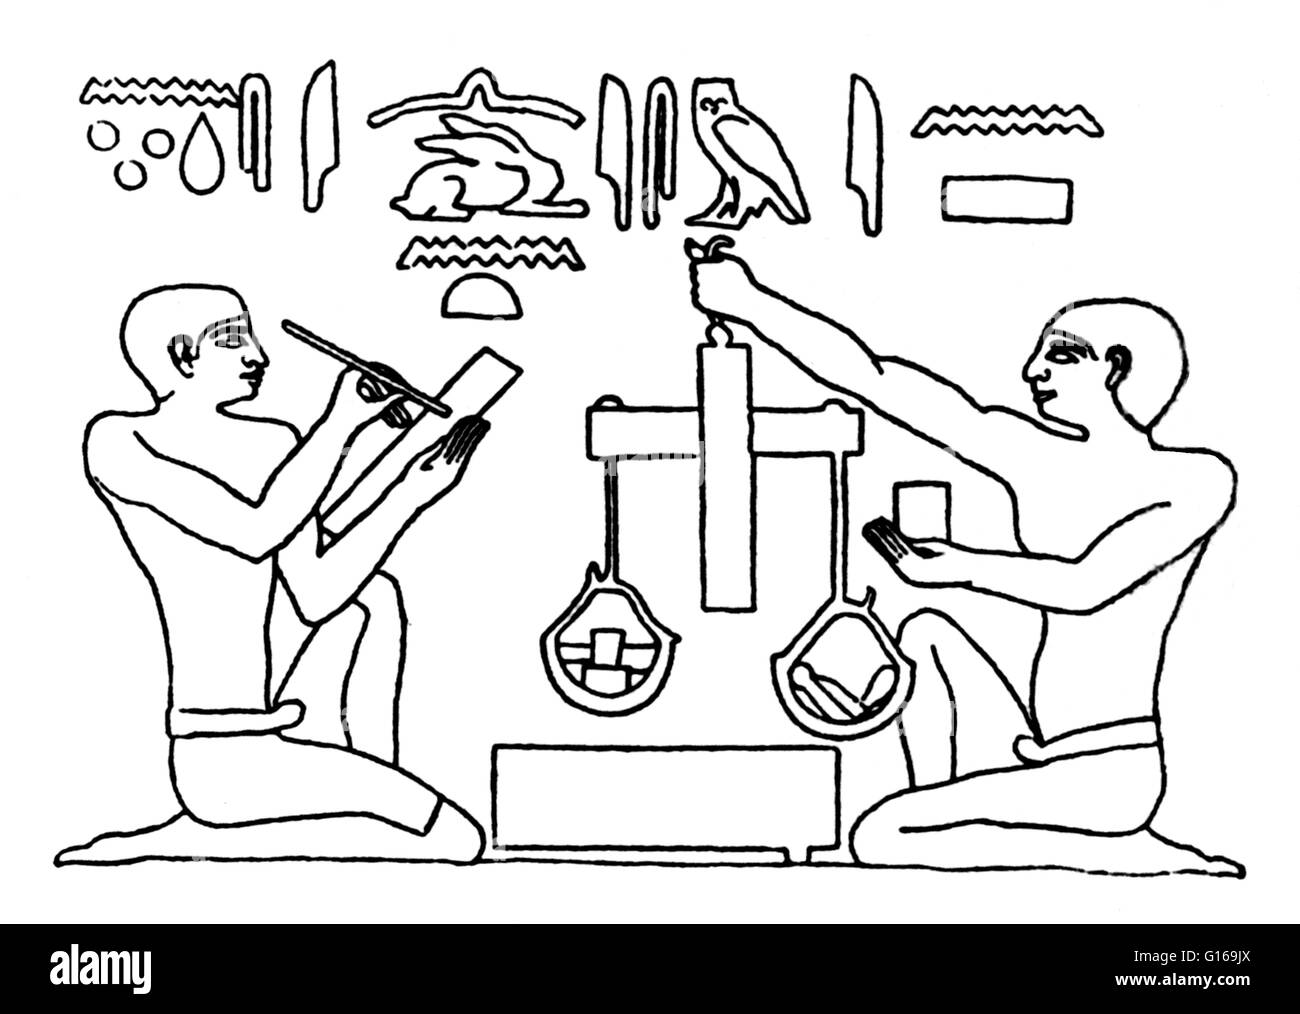 Poids et mesures ont été parmi les premiers outils inventés par l'homme.  Début de l'Égyptien, babylonien et enregistrements et la Bible, indiquent  que la longueur a été mesuré pour la première fois